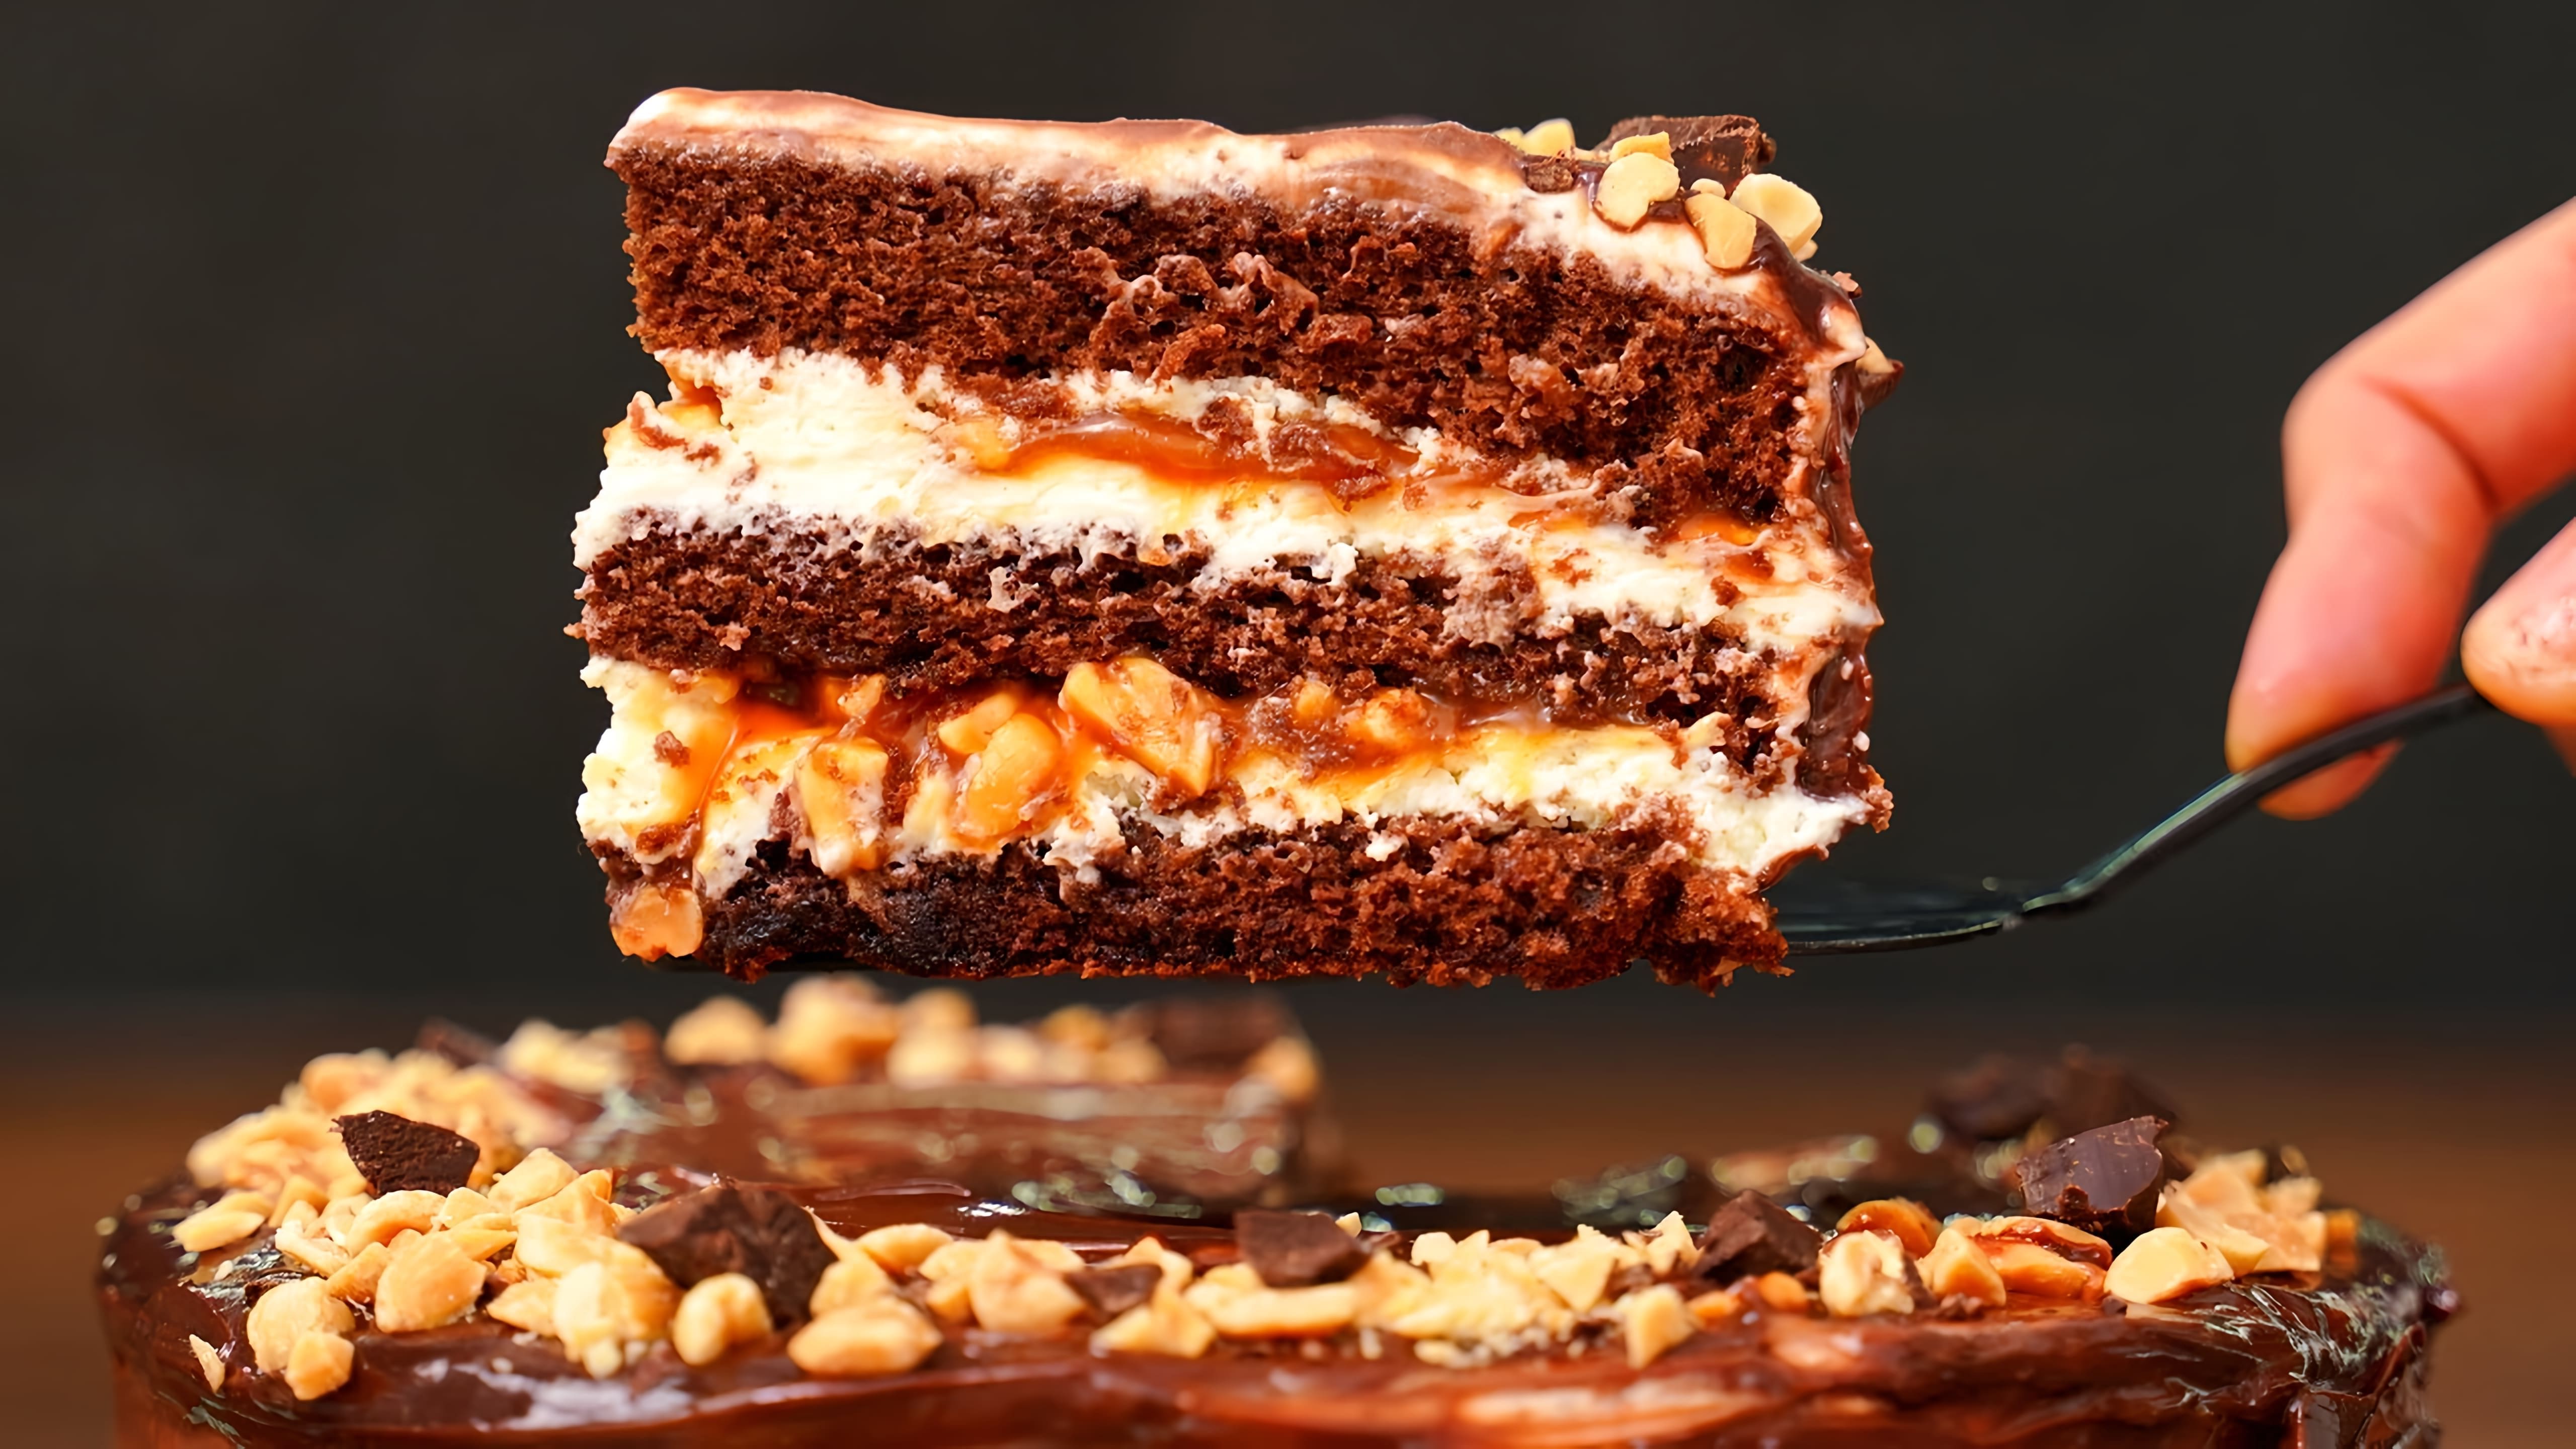 Видео как приготовить торт "Сникерс", который представляет собой шоколадный торт, начиненный и украшенный карамелью и арахисом